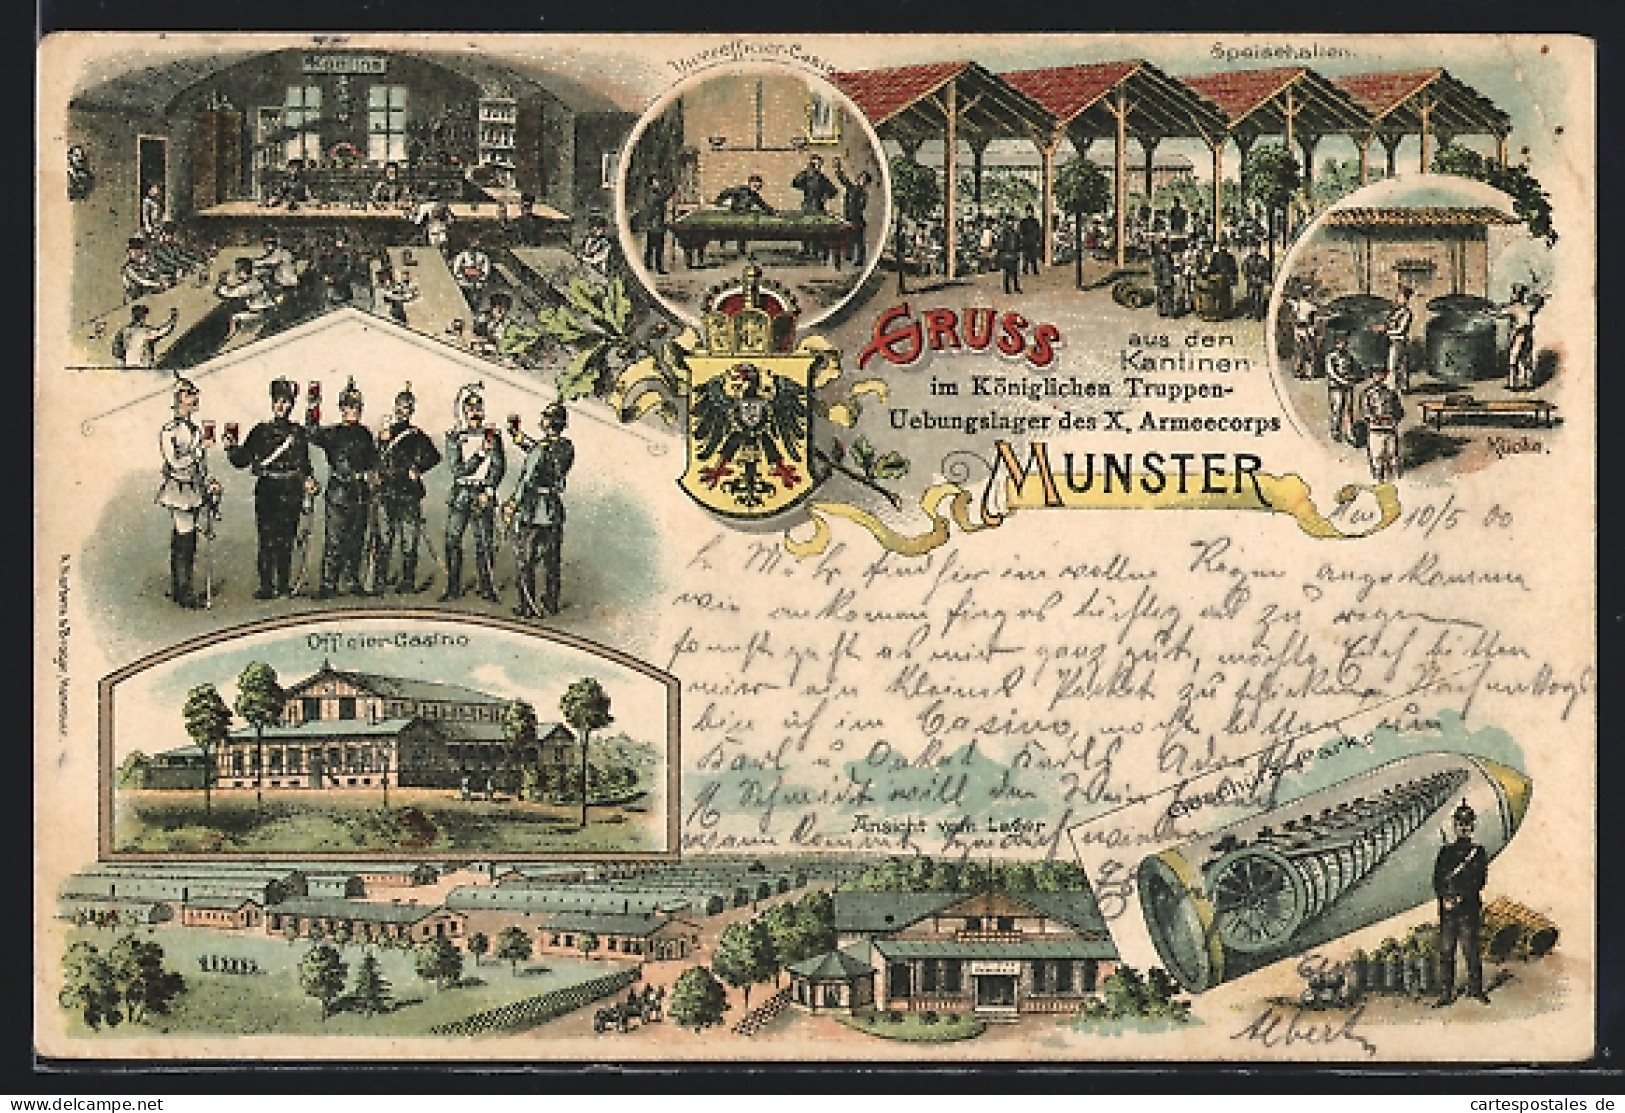 Lithographie Munster, Übungslager Des X. Armeekorps, Officier-Casino, Kantine, Speisehallen, Ansicht Vom Lager  - Munster